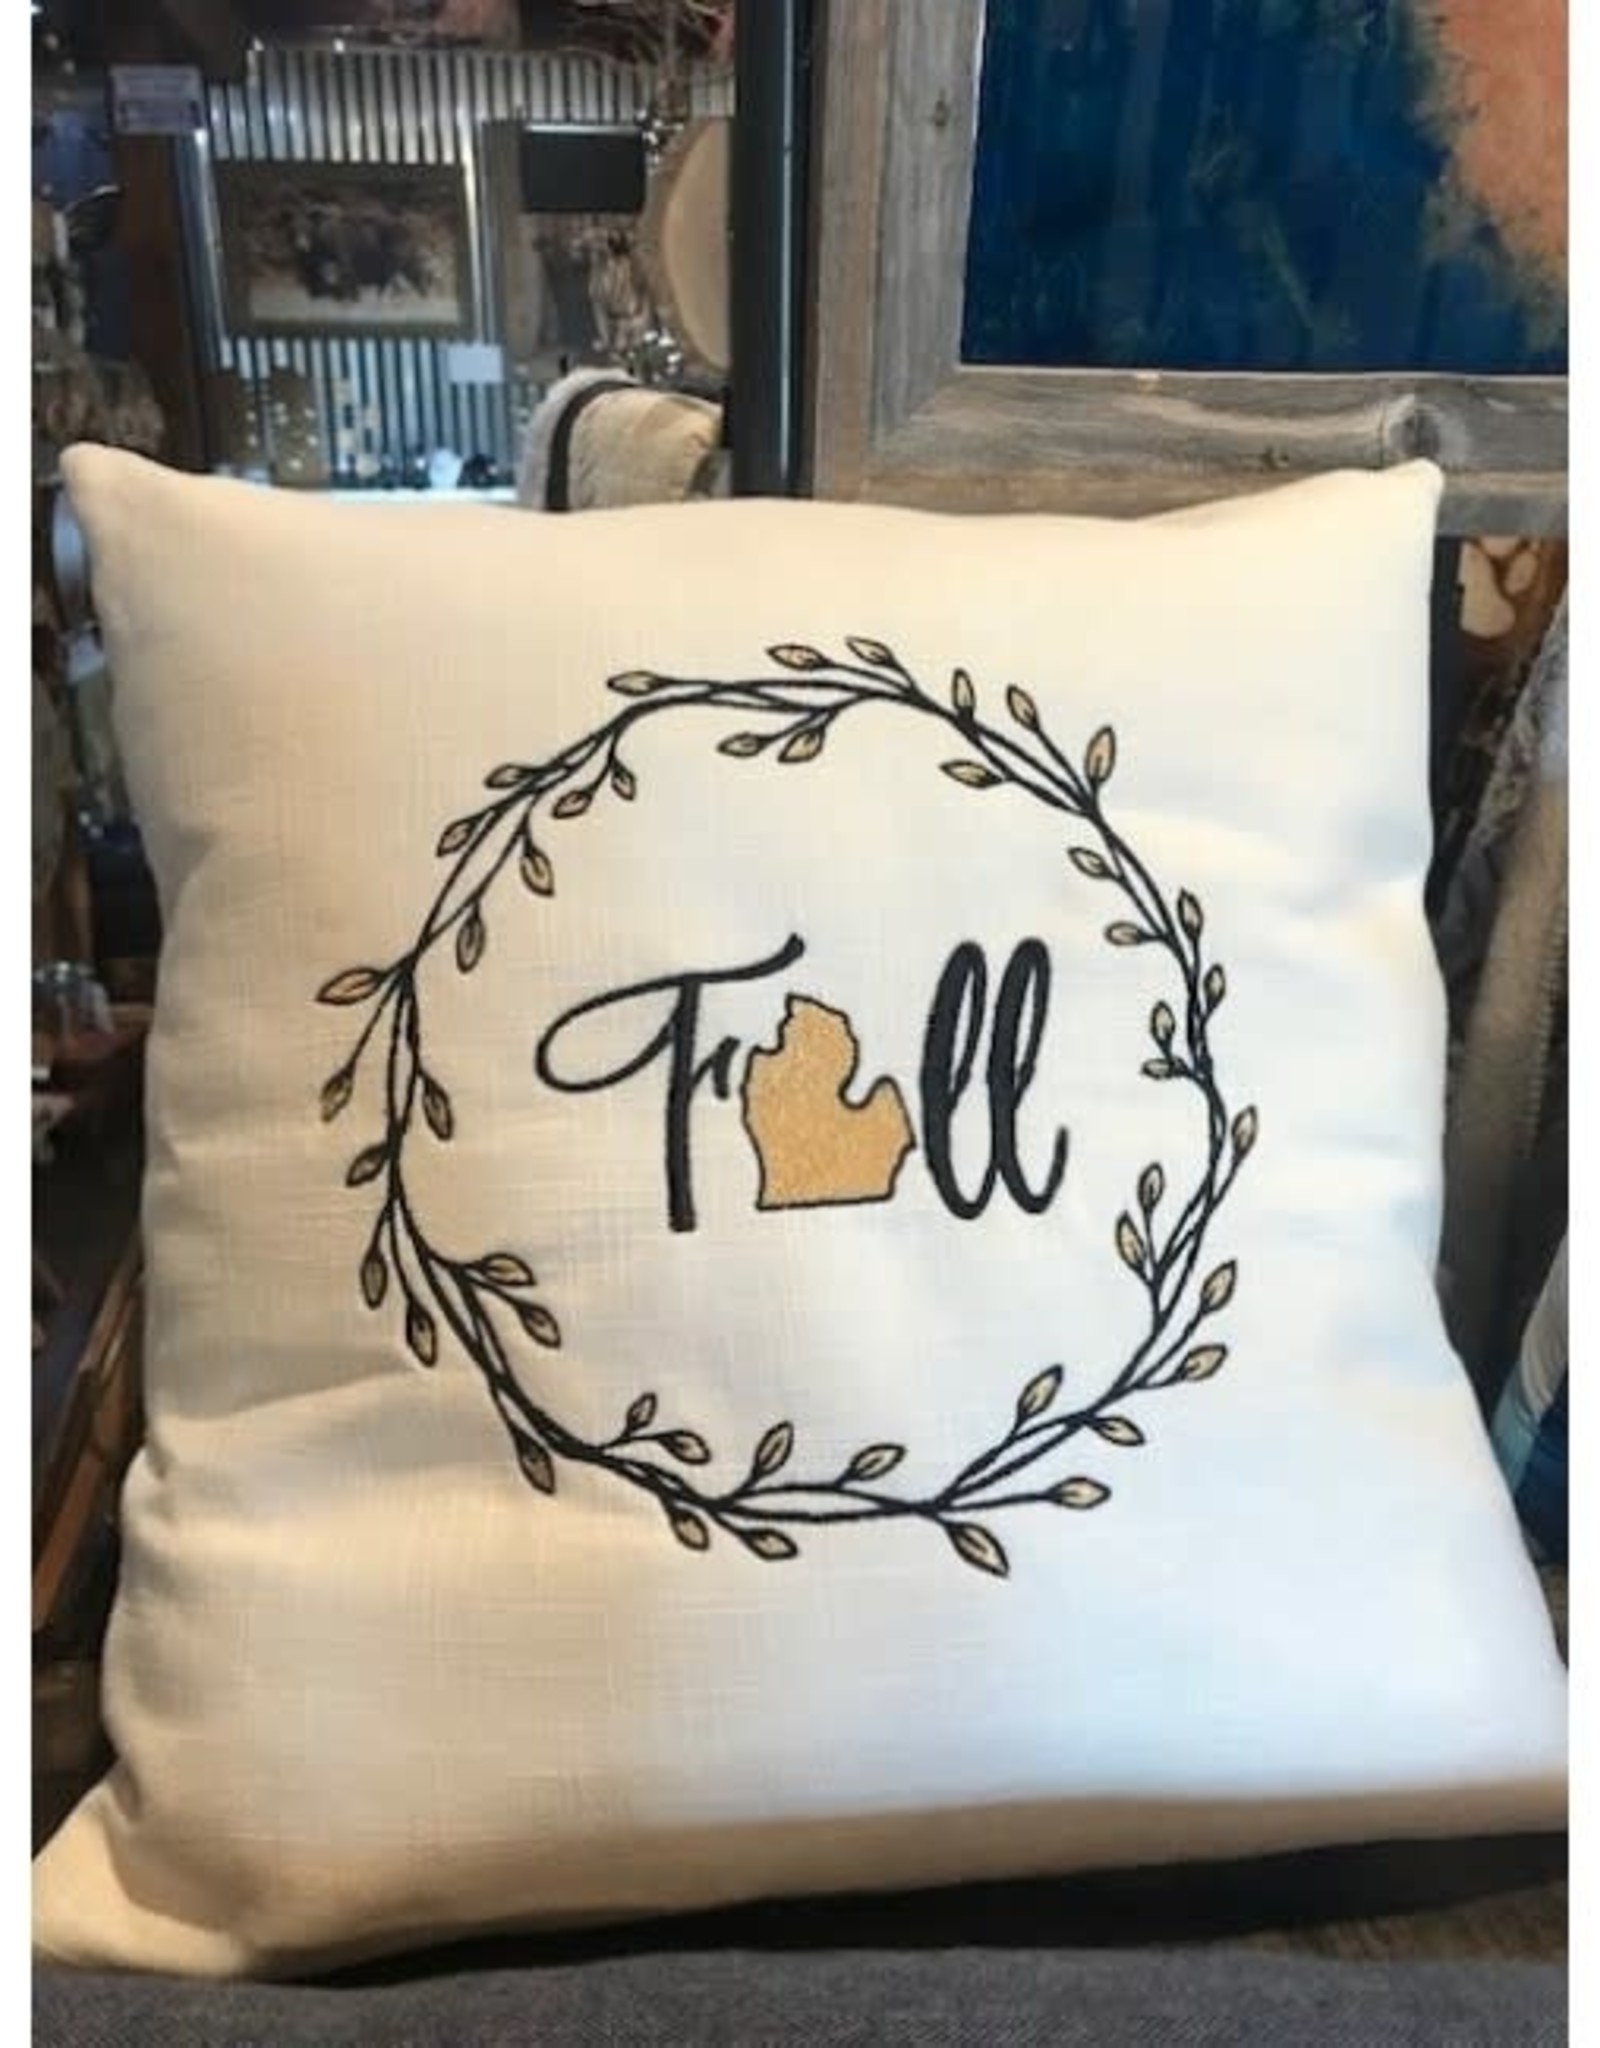 Bear Den Handmade Embroidered Pillow - Fall Michigan Wreath